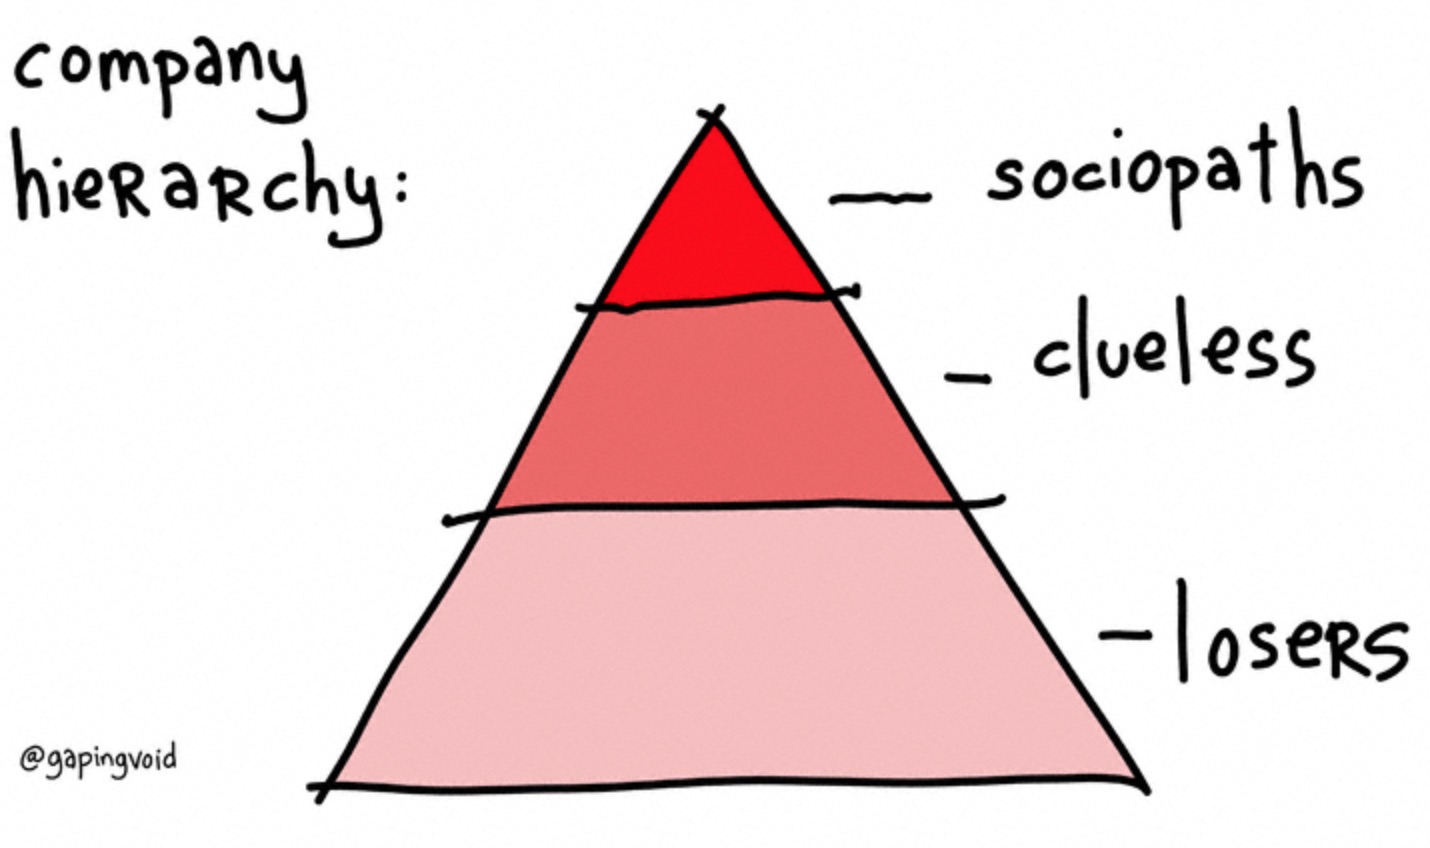 Company hierarchy